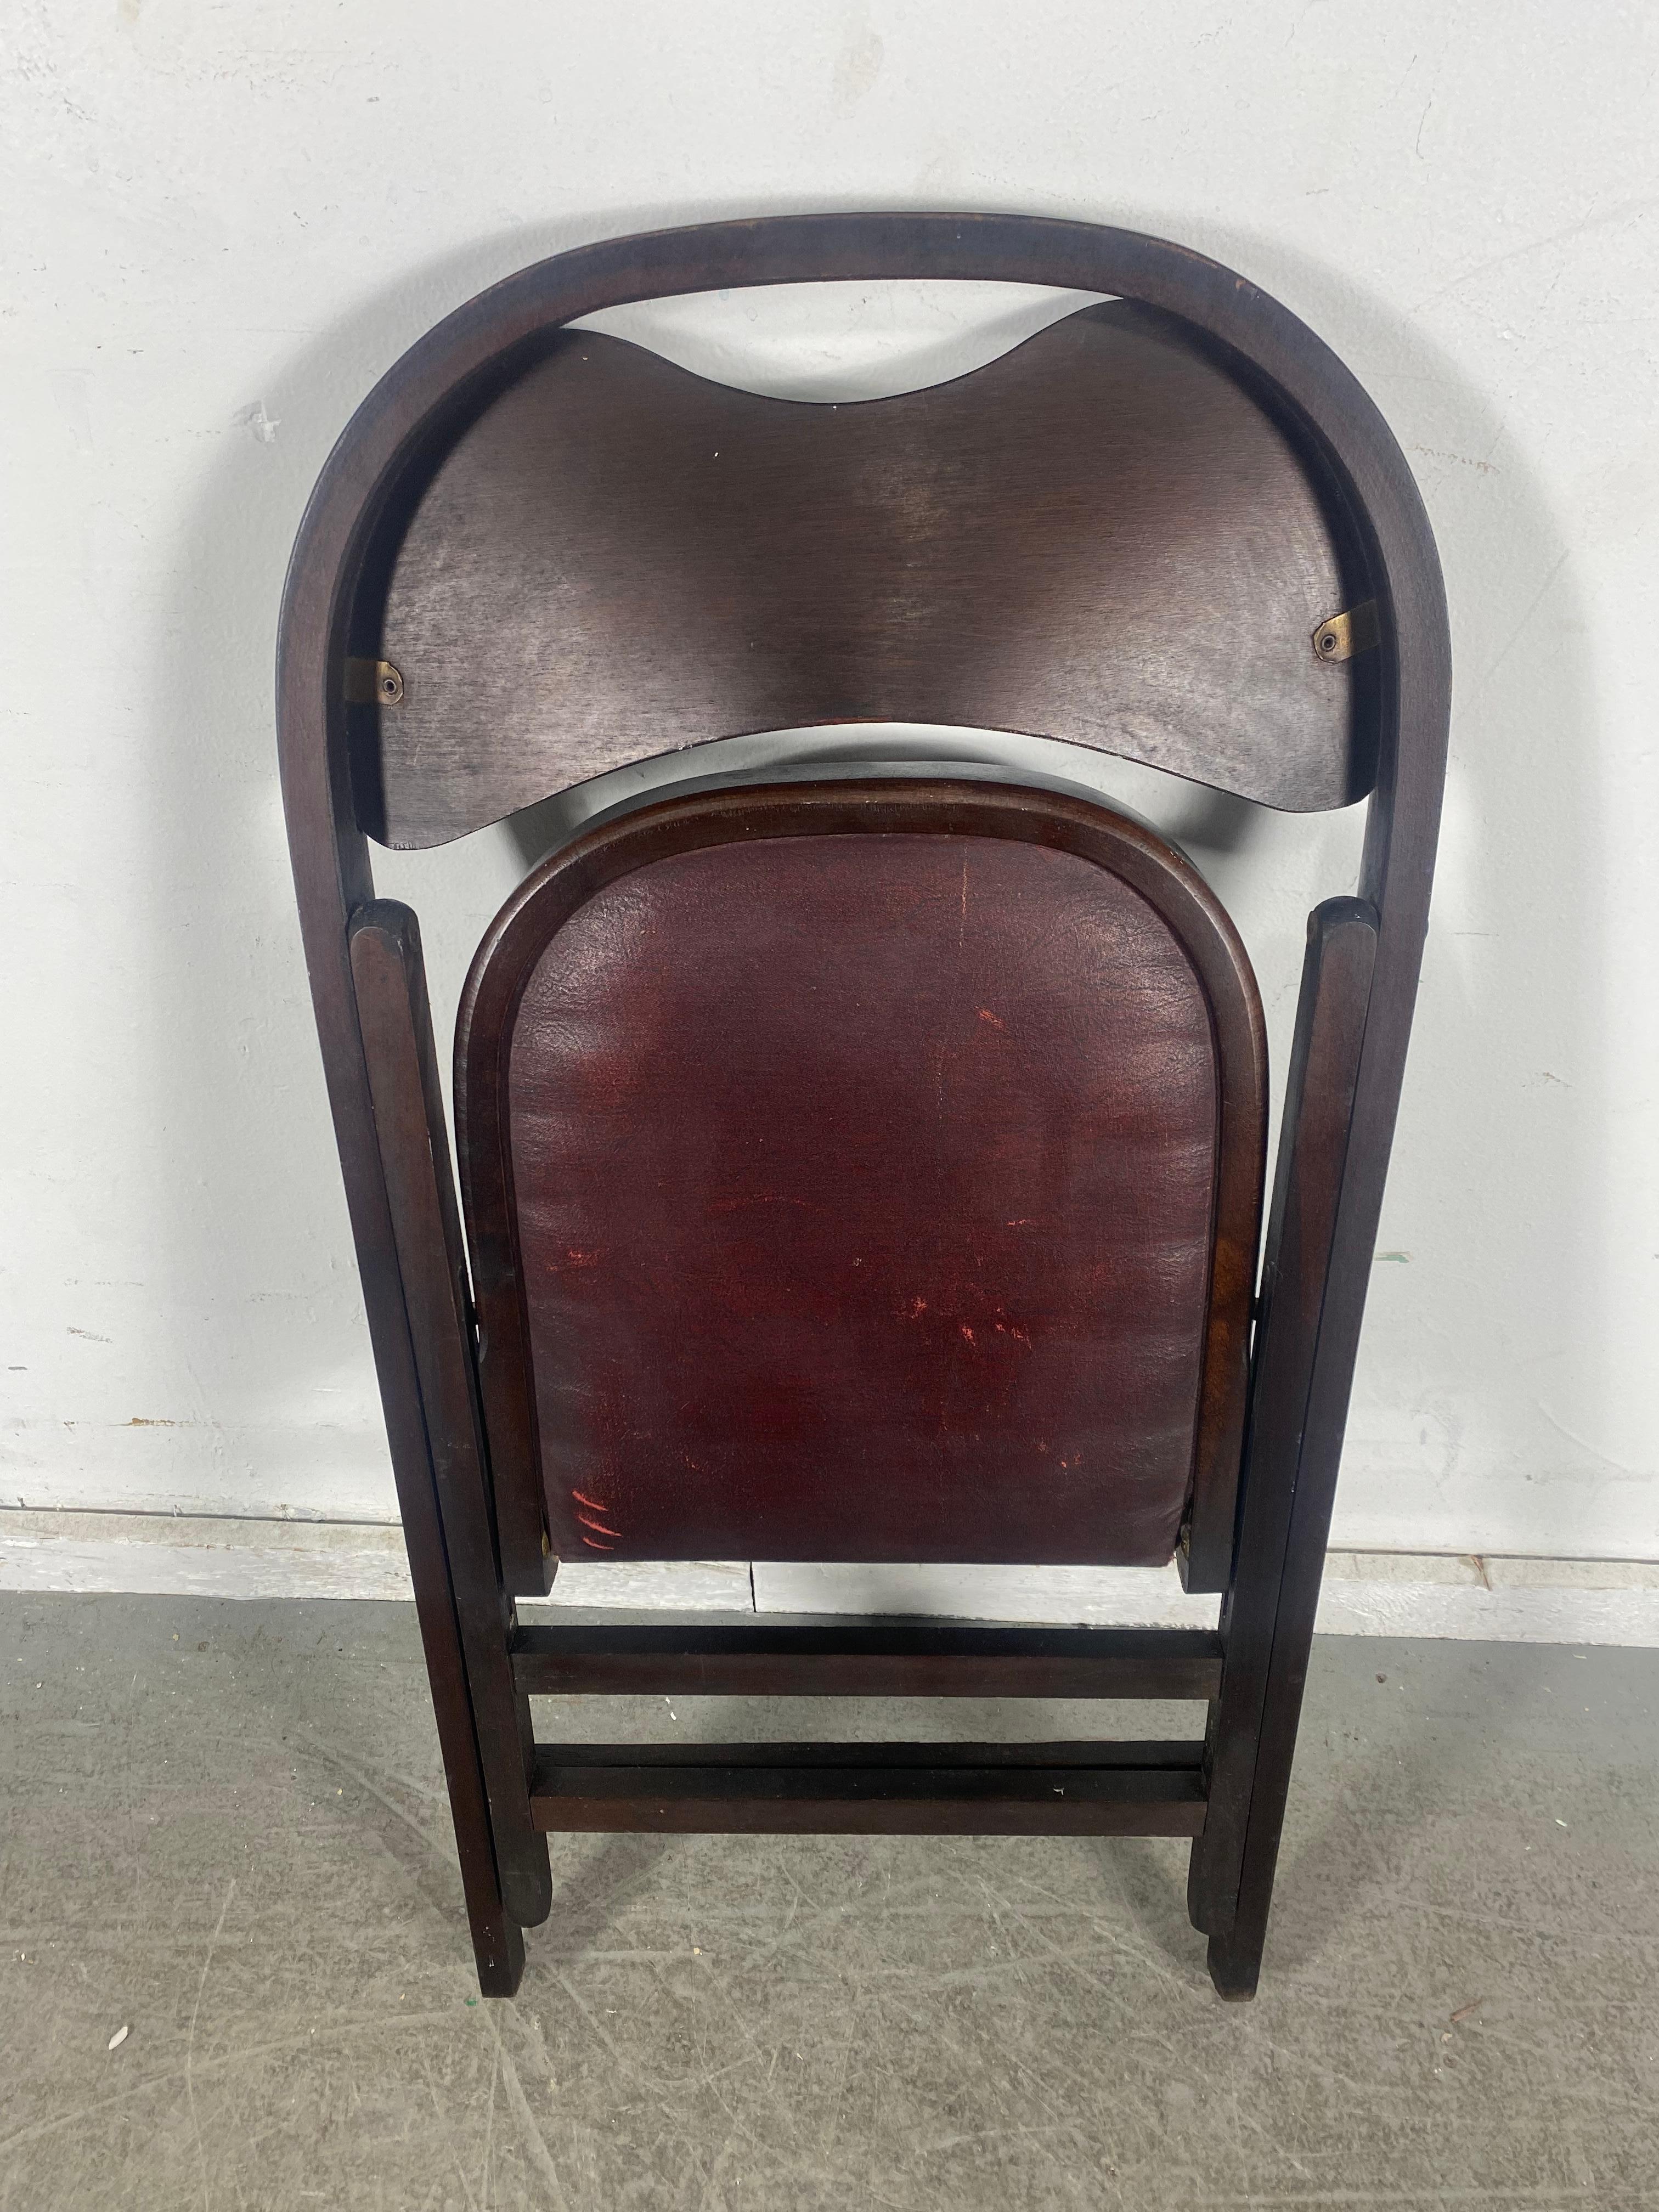 Ensemble de 4 chaises pliantes classiques Bauhaus de style Thonet fabriquées par Stakmore...Merveilleux état d'origine.... Superbe patine, couleur et surface. Extrêmement bien fait,